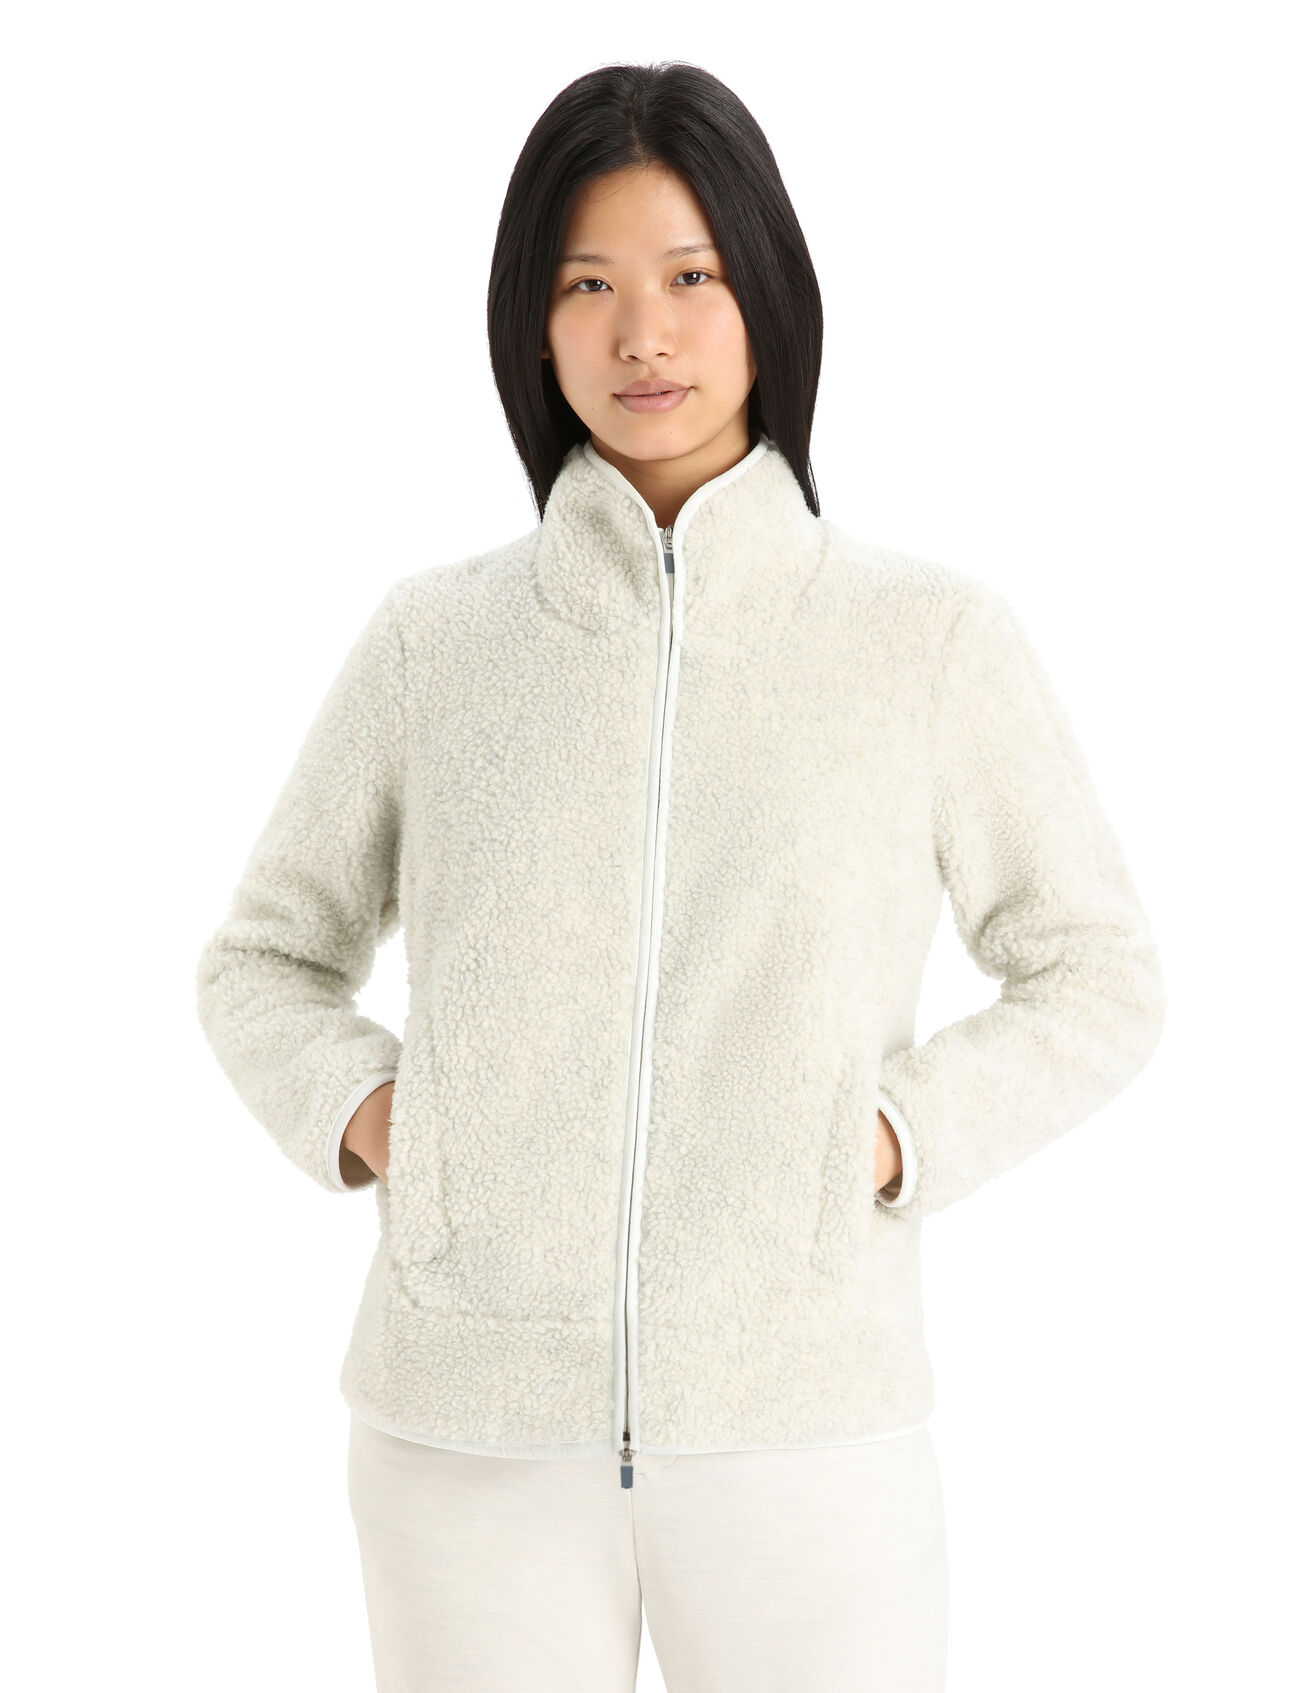 RealFleece™ Merino High Pile Zip-Jacke Damen Mit klassischem Outdoor-Style und den natürlichen Vorteilen von Merinowolle, die RealFleece™ High Pile Zip-Jacke ist ein warmer, stylisher und ultrakomfortabler Fleece, der für urbane Abenteuer ideal ist. 